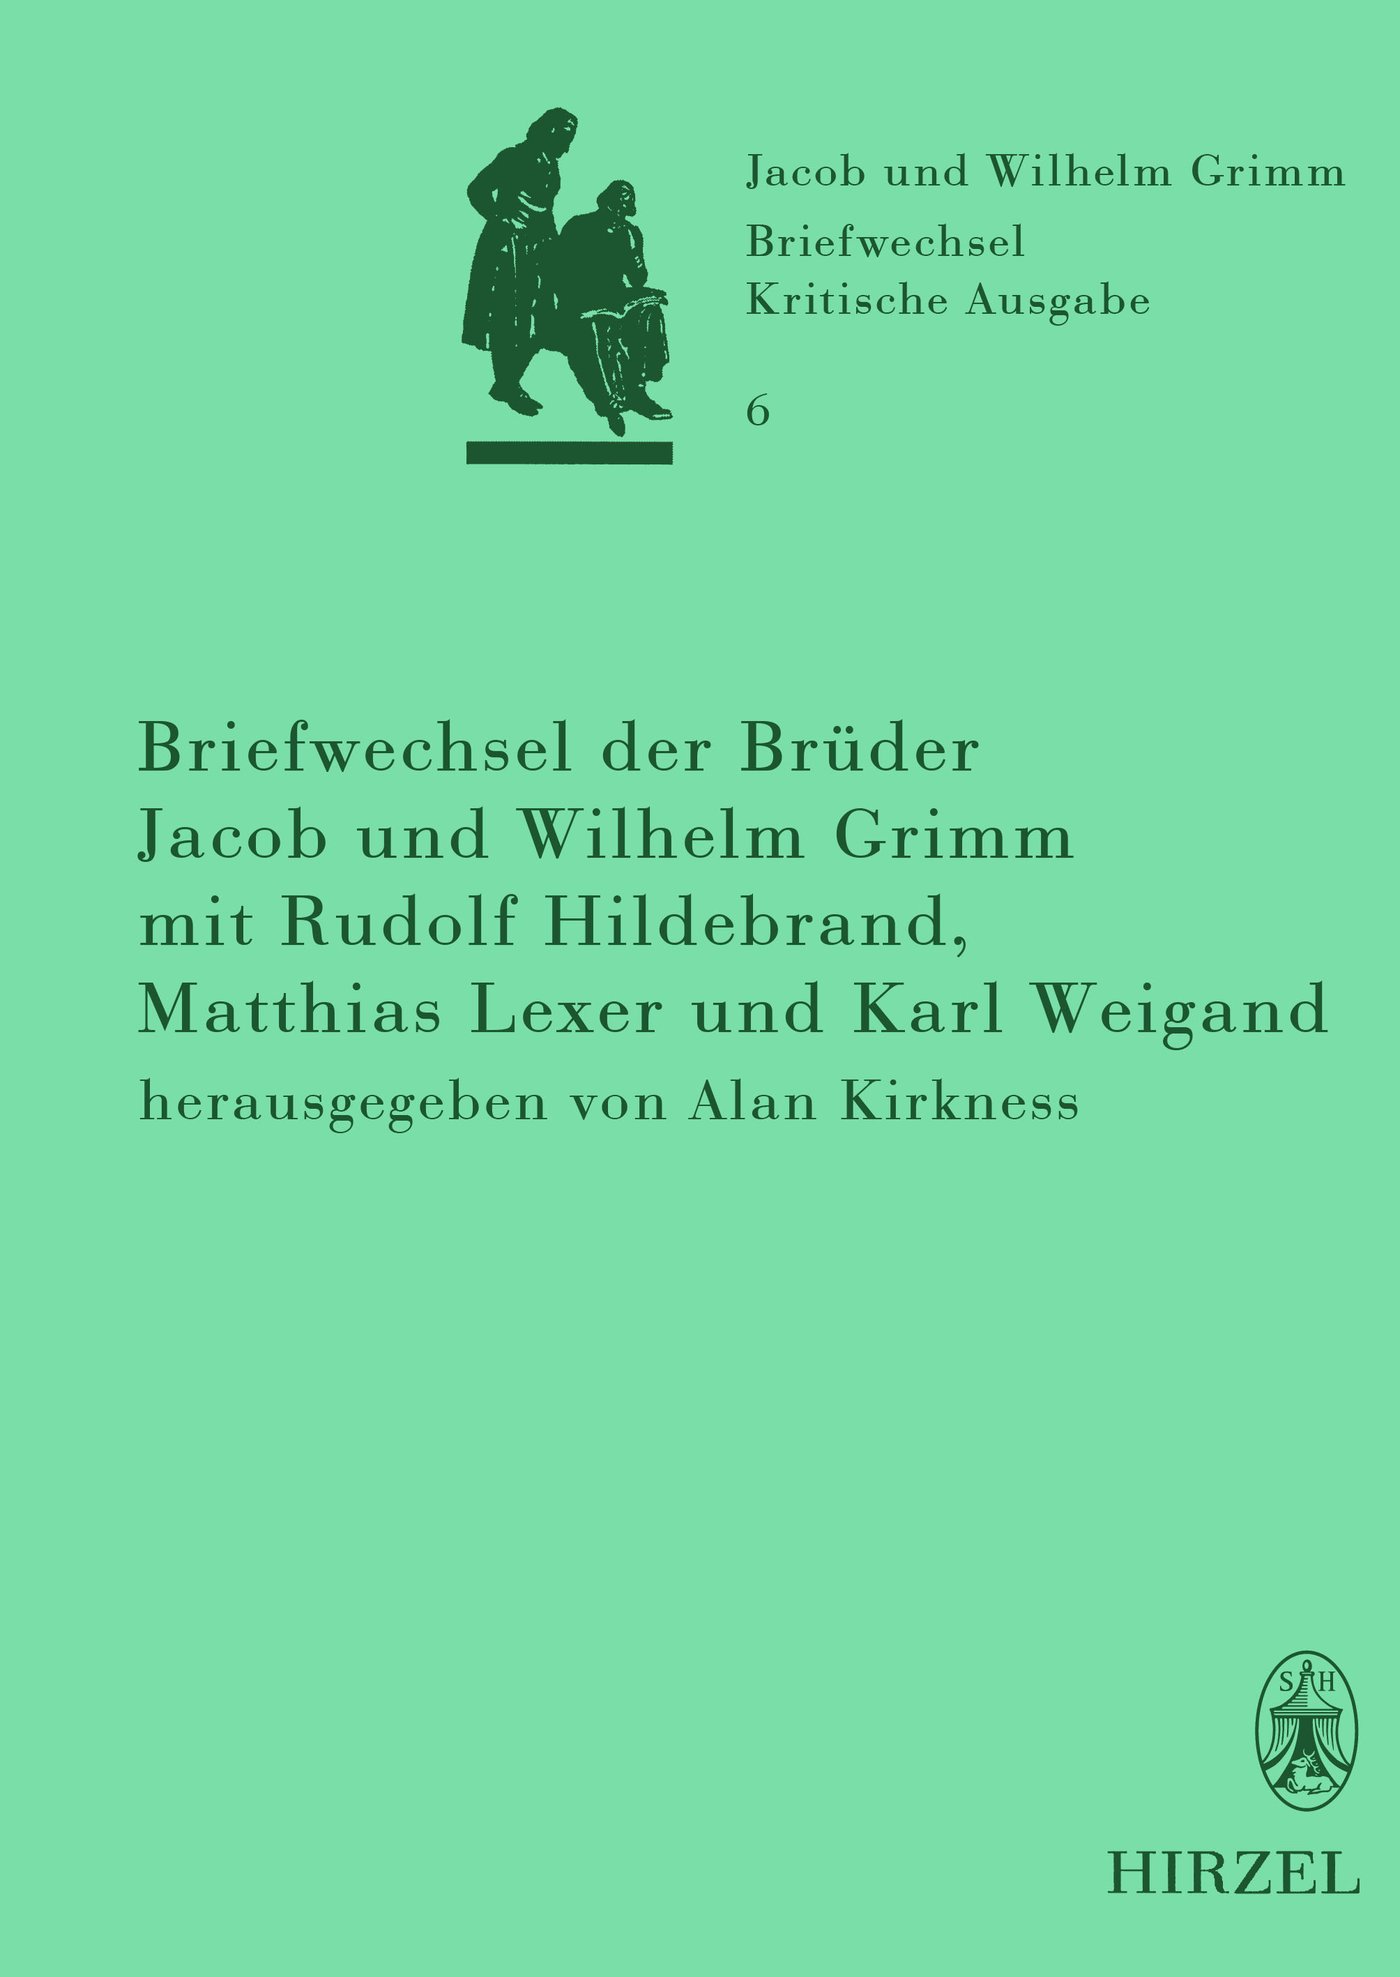 Briefwechsel der Brüder Jacob und Wilhelm Grimm mit Rudolf Hildebrand, Matthias Lexer und Karl Weigand